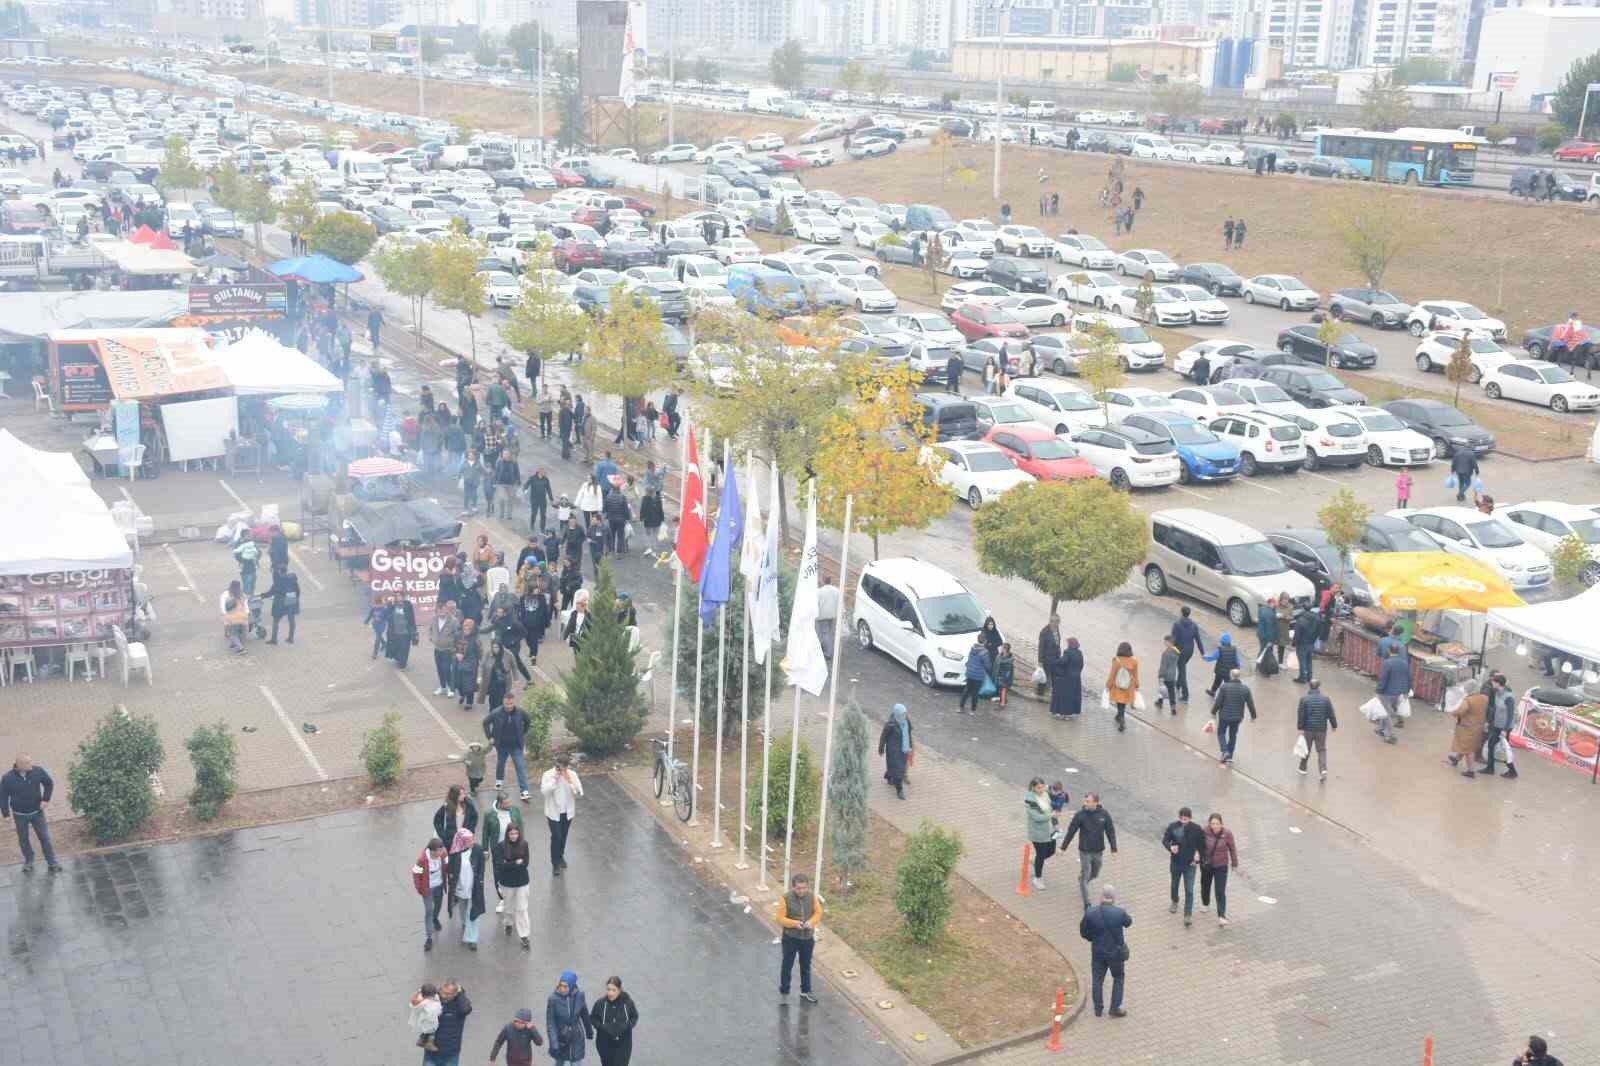 Diyarbakrda gurme fuarn 347 bin kii ziyaret etti
